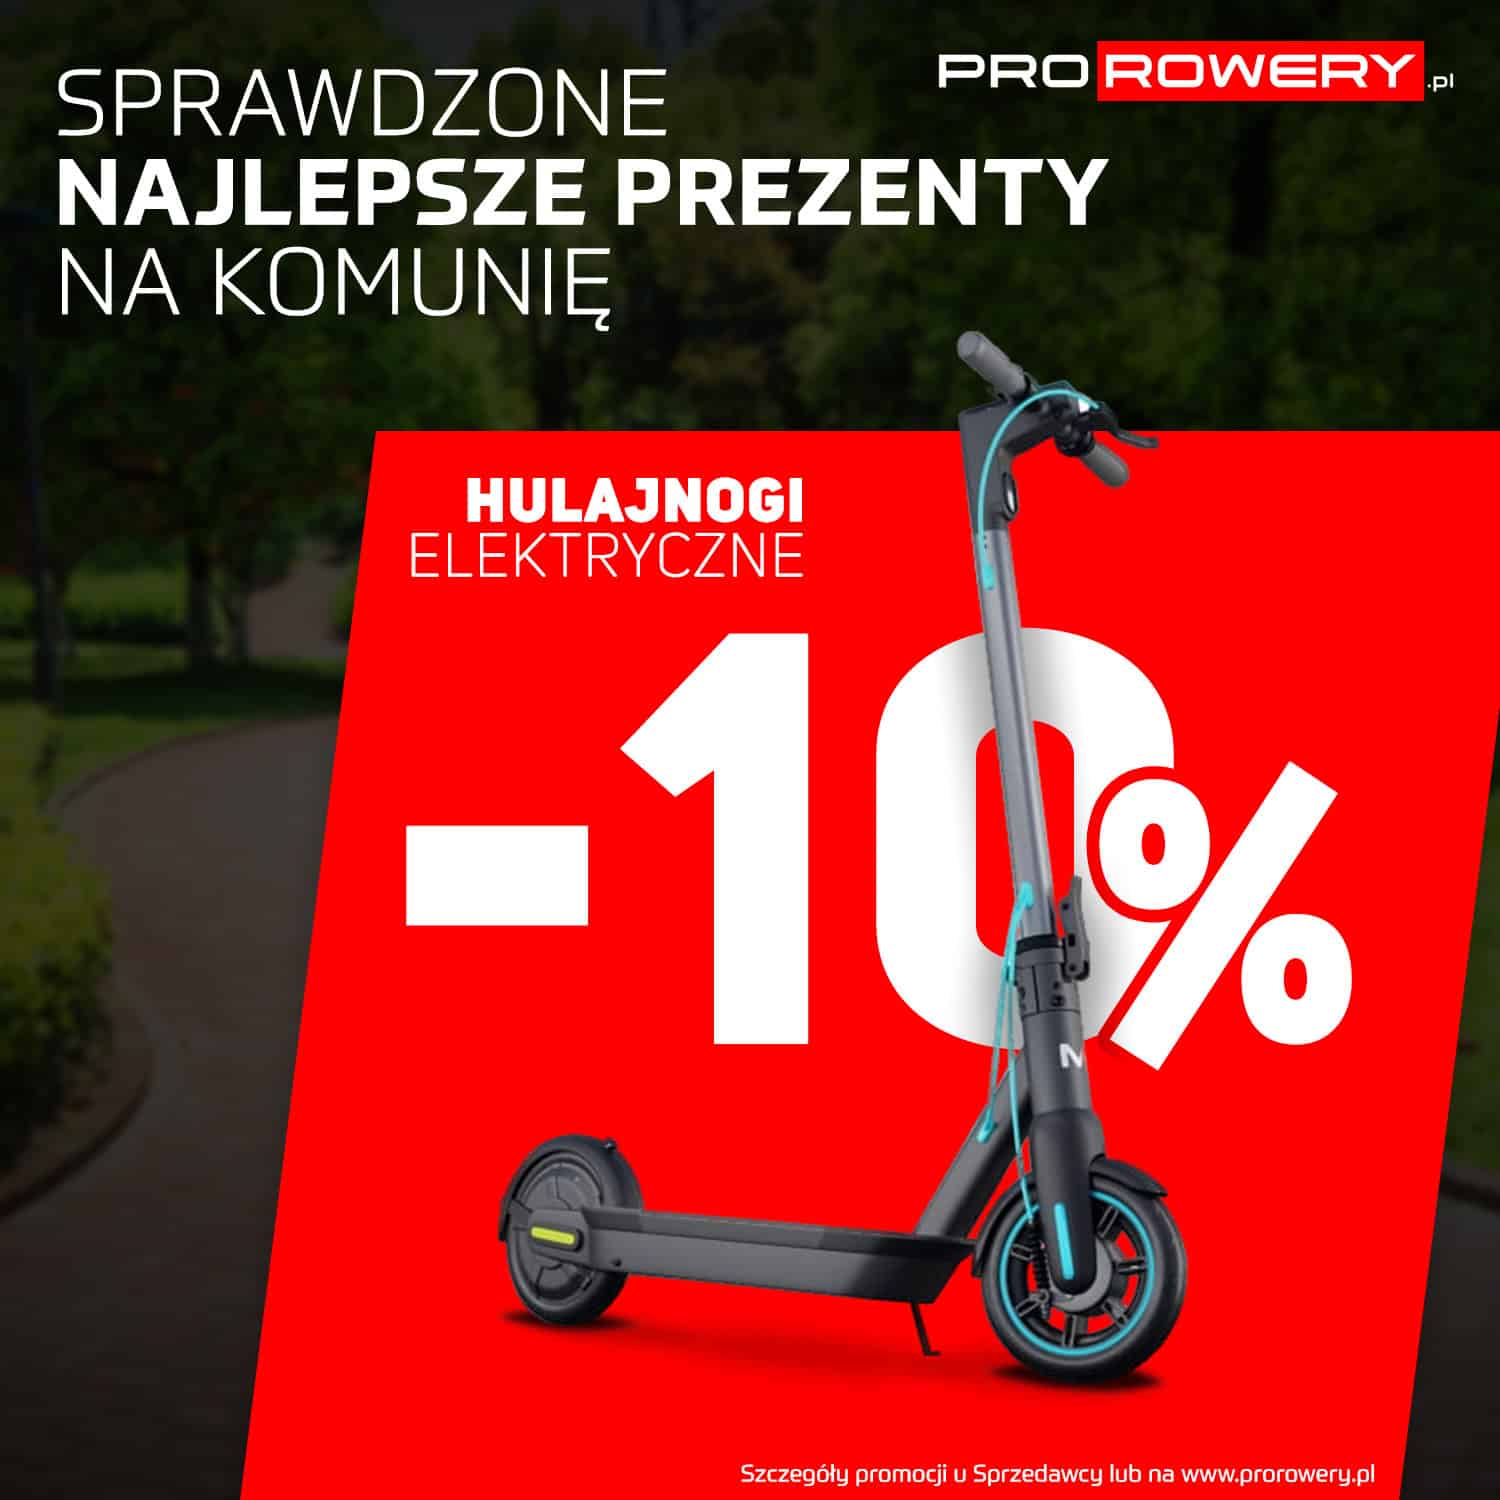 You are currently viewing Wypożyczenie e-bike za 1 zł, najlepsze marki rowerowe w ratach RRSO0%, promocje na rowery komunijne. To wszystko w salonie Prorowery.pl w Pyrzycach na ul. Żwirki i Wigury 1